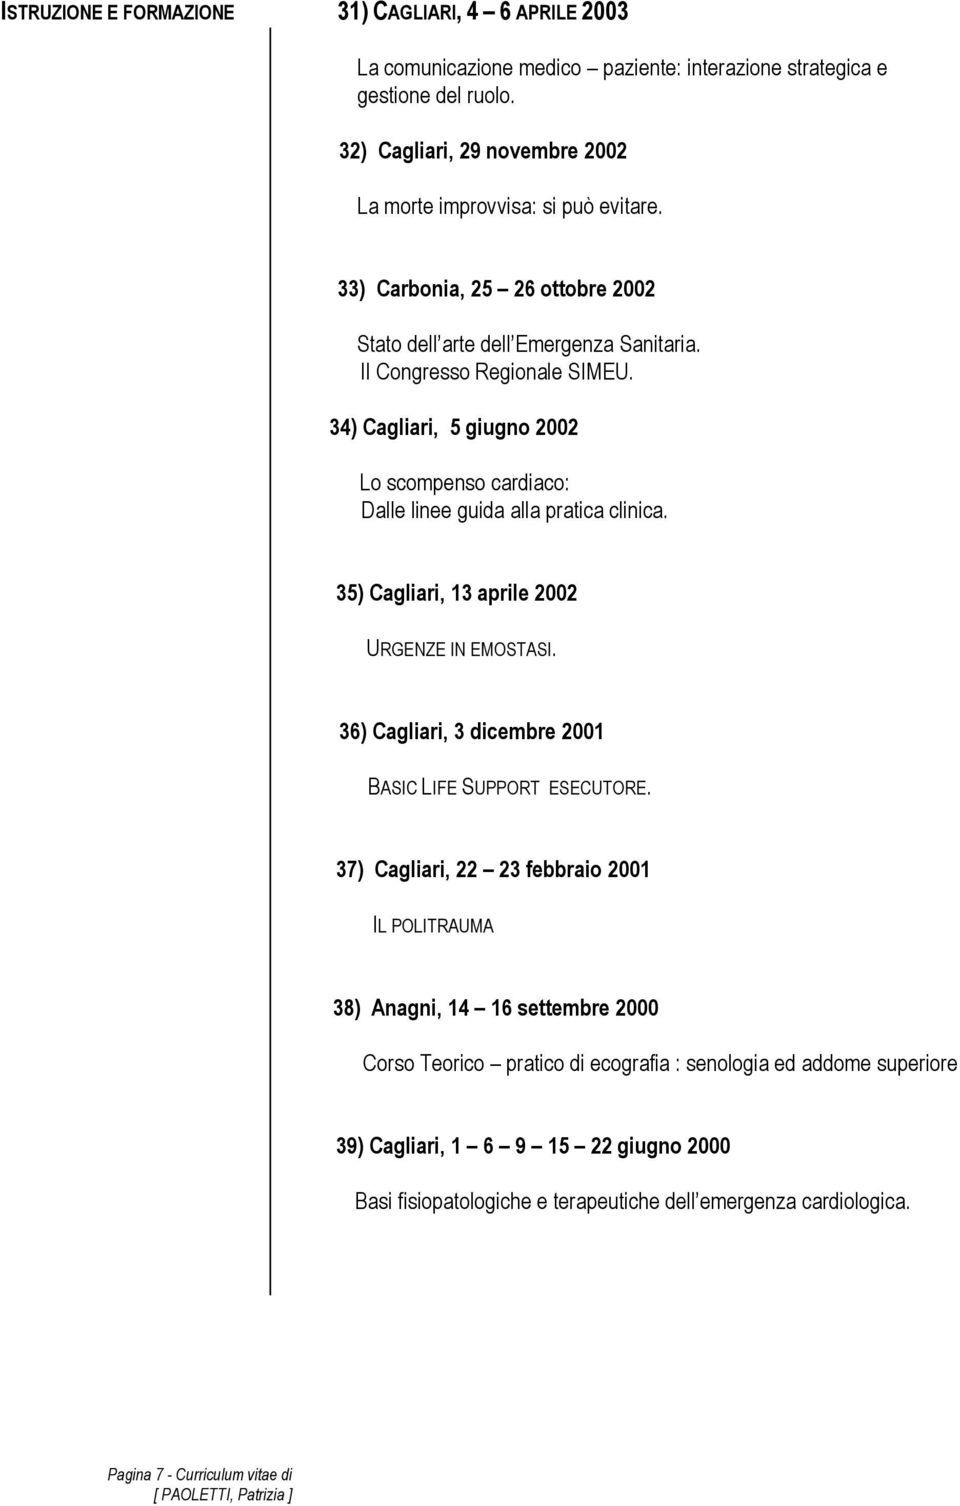 34) Cagliari, 5 giugno 2002 Lo scompenso cardiaco: Dalle linee guida alla pratica clinica. 35) Cagliari, 13 aprile 2002 URGENZE IN EMOSTASI.